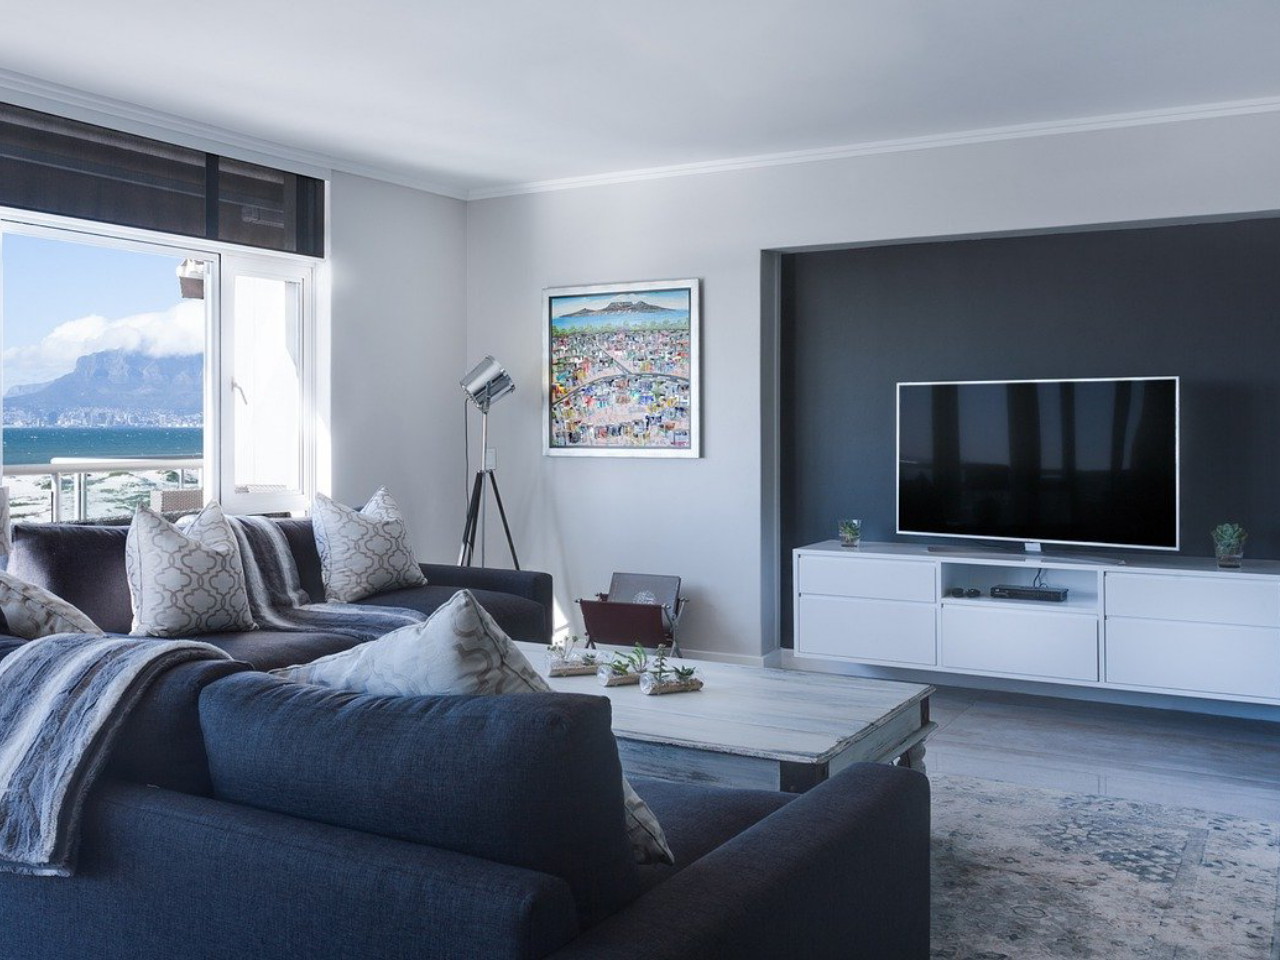 desain ruang keluarga minimalis